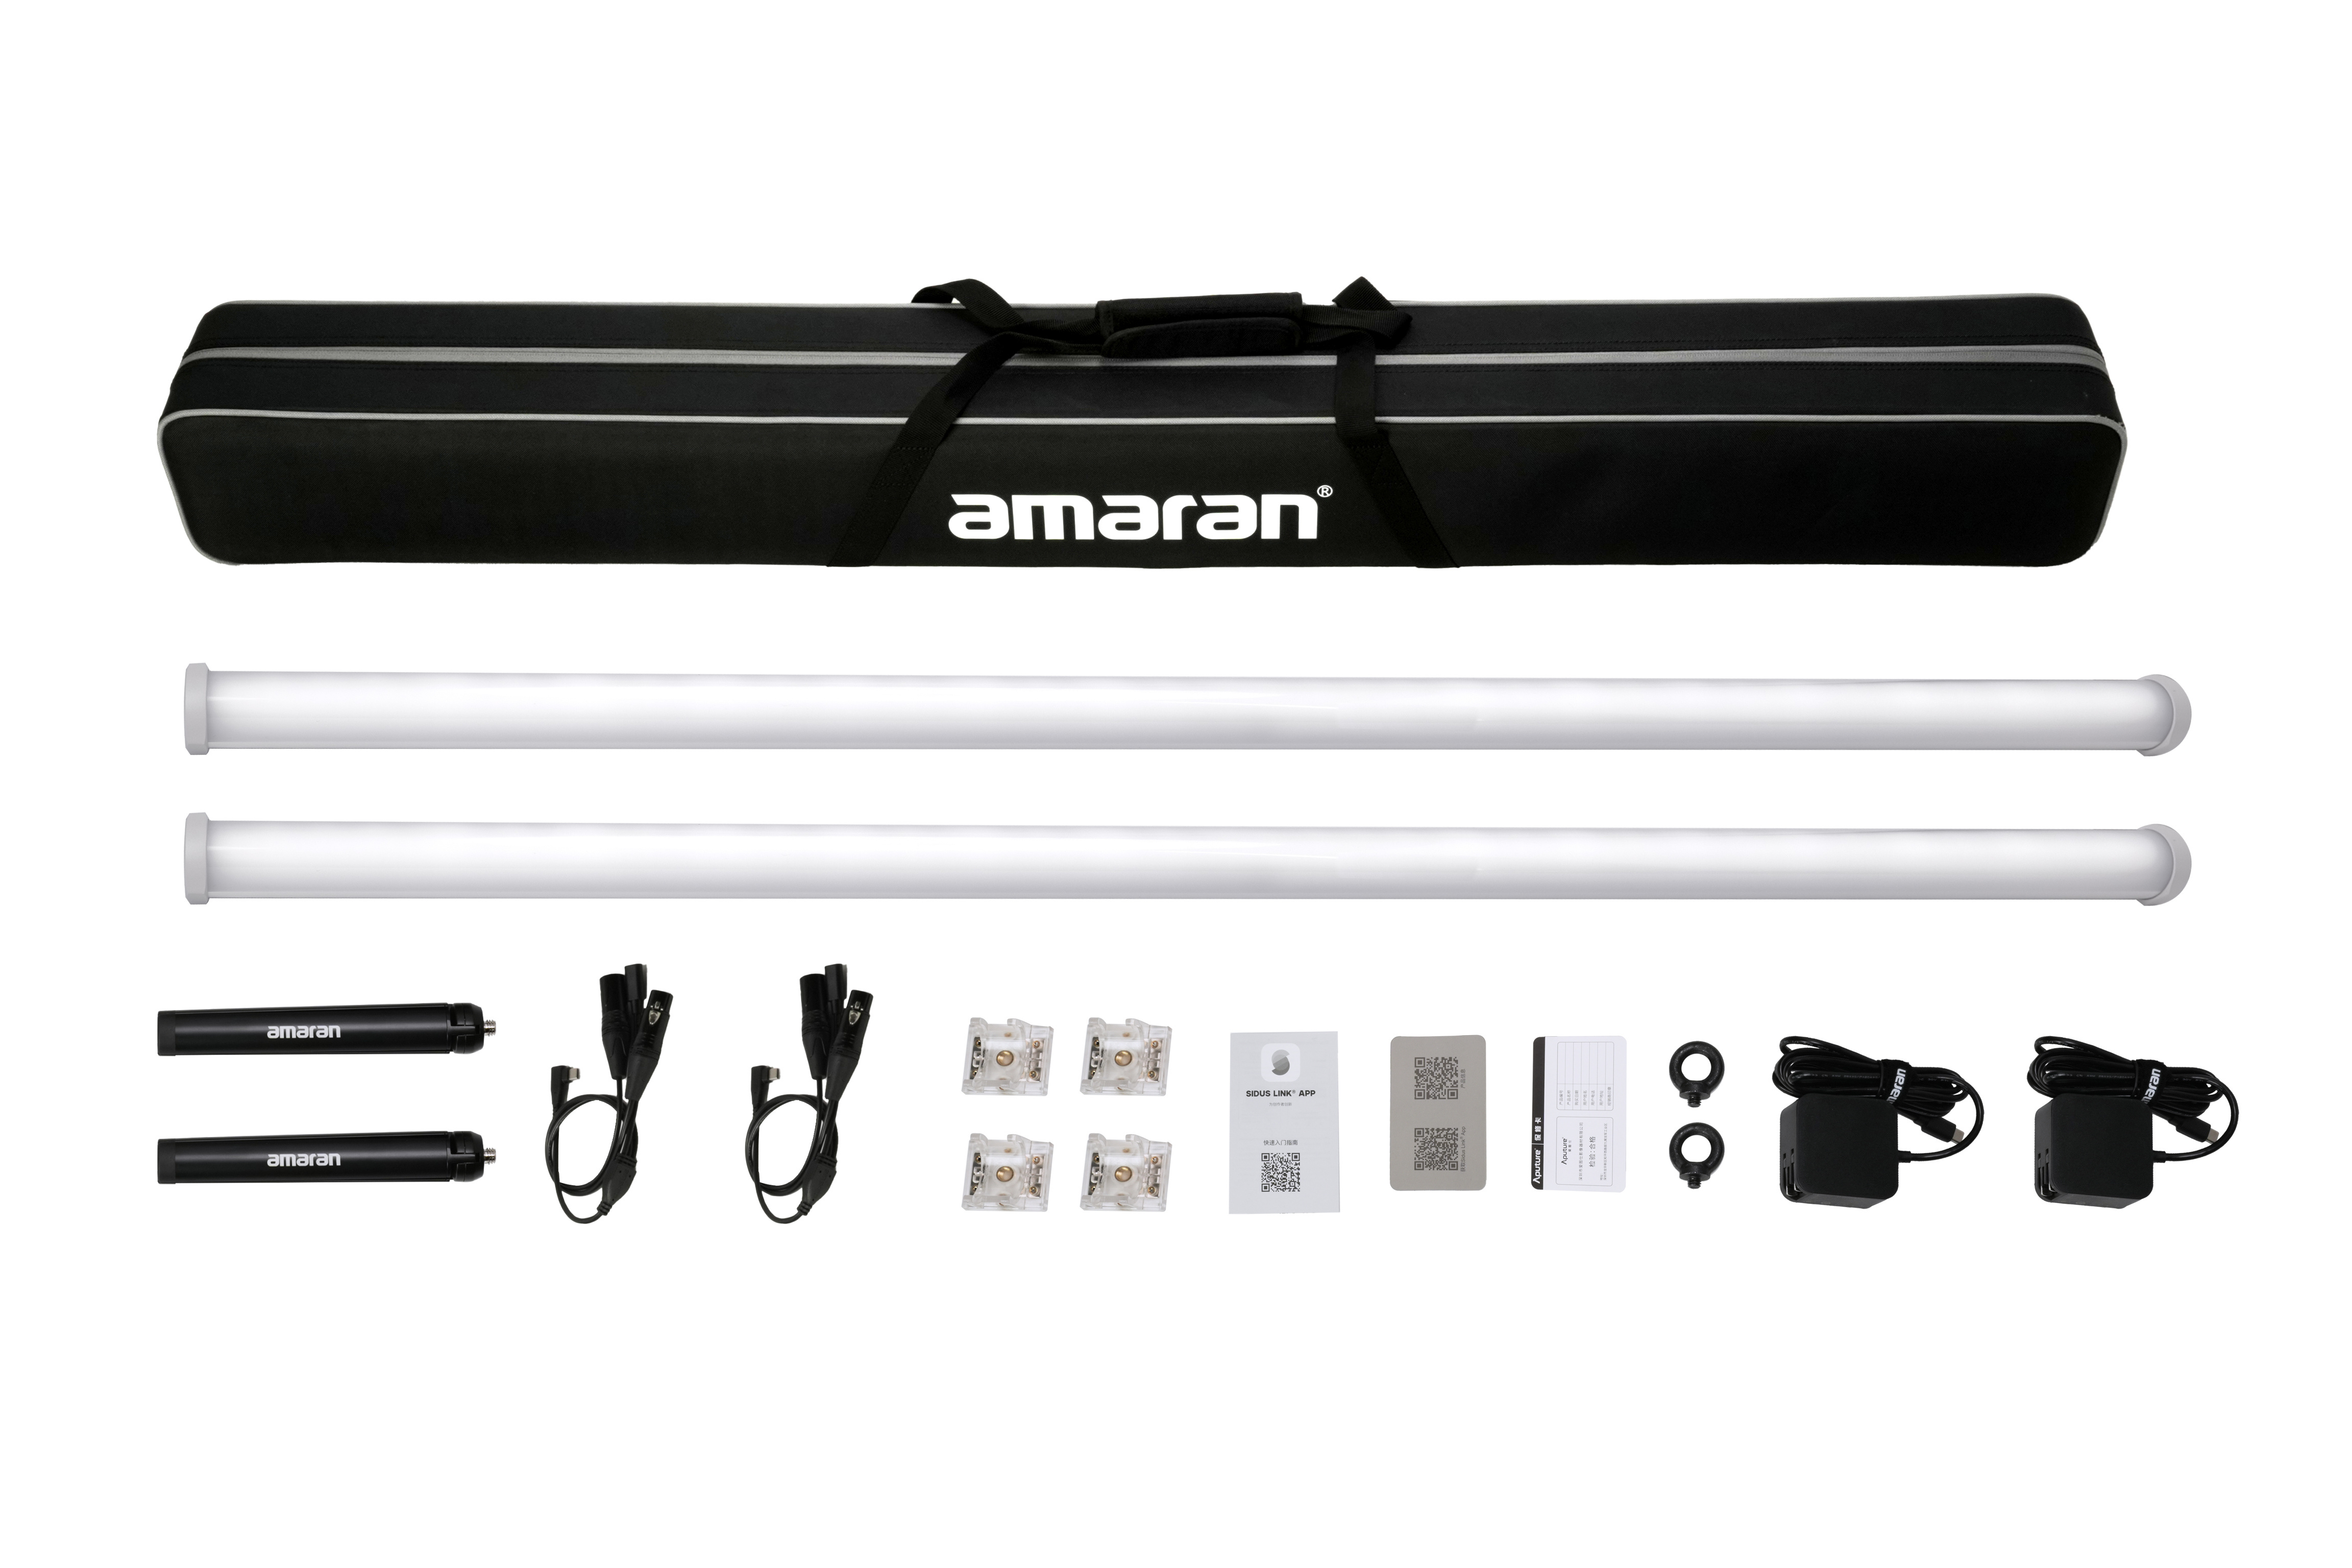 amaran PT4c Colour LED Pixel Tube 2-Light Production Kit